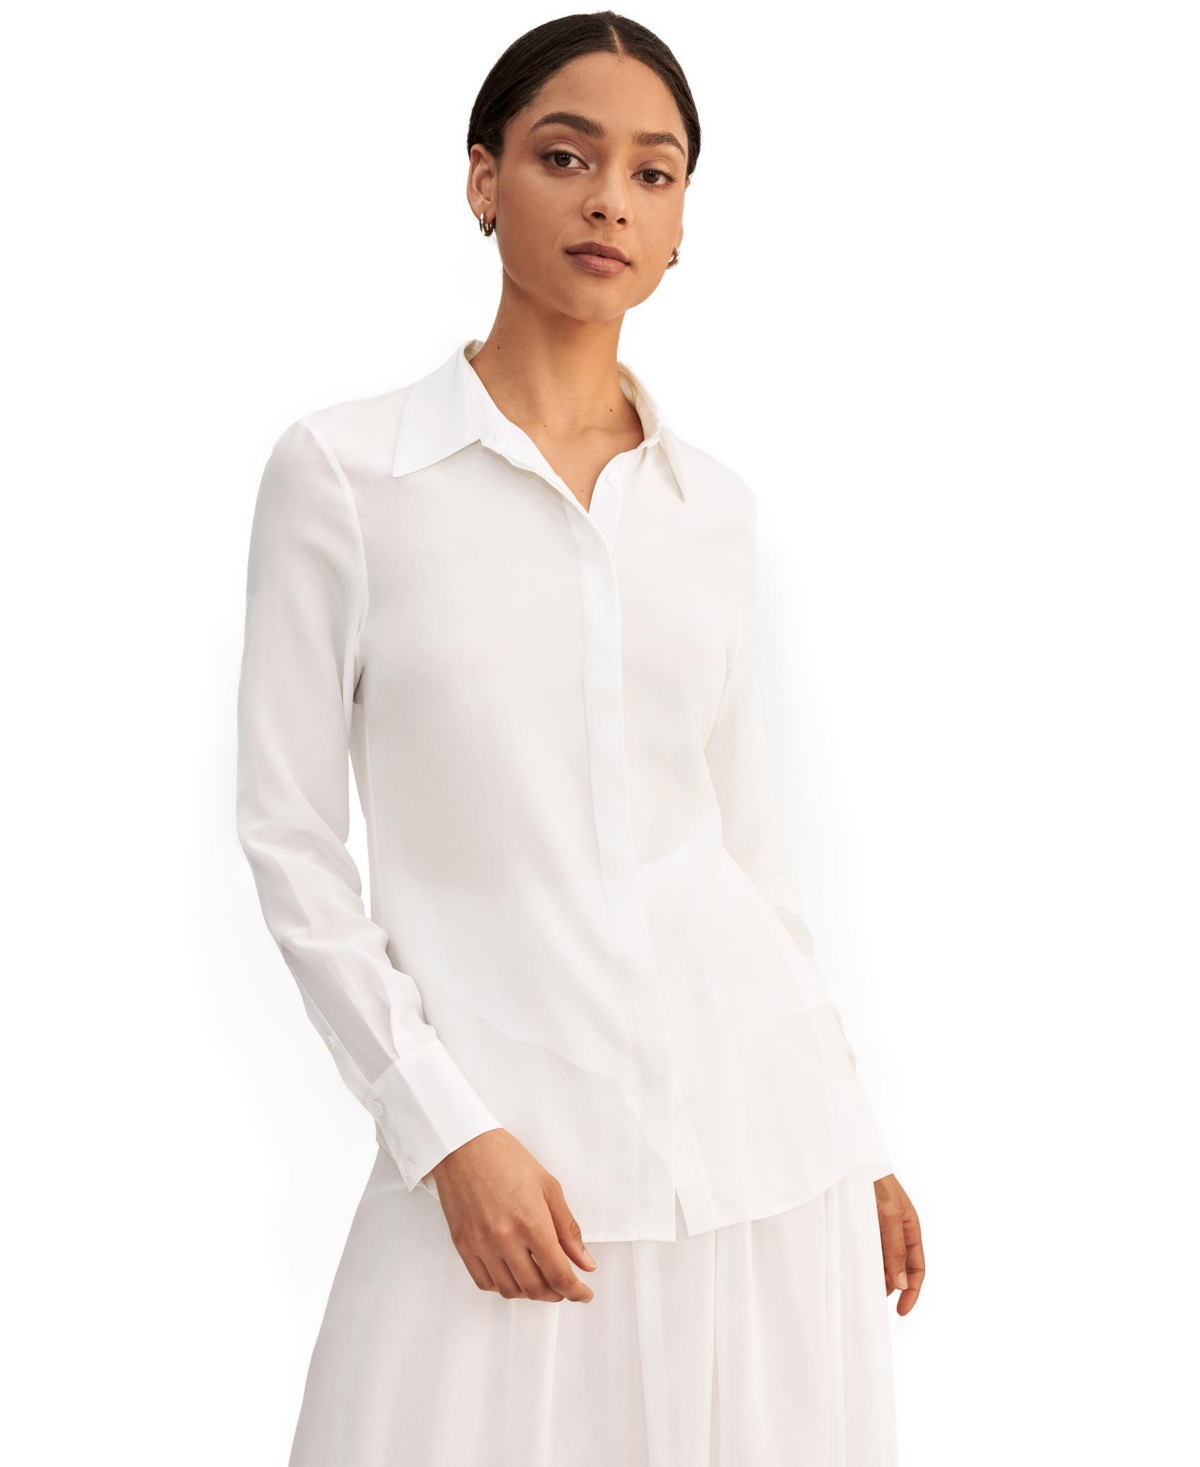 Wrinkle Free Basic Silk Shirt for Women - Natural white